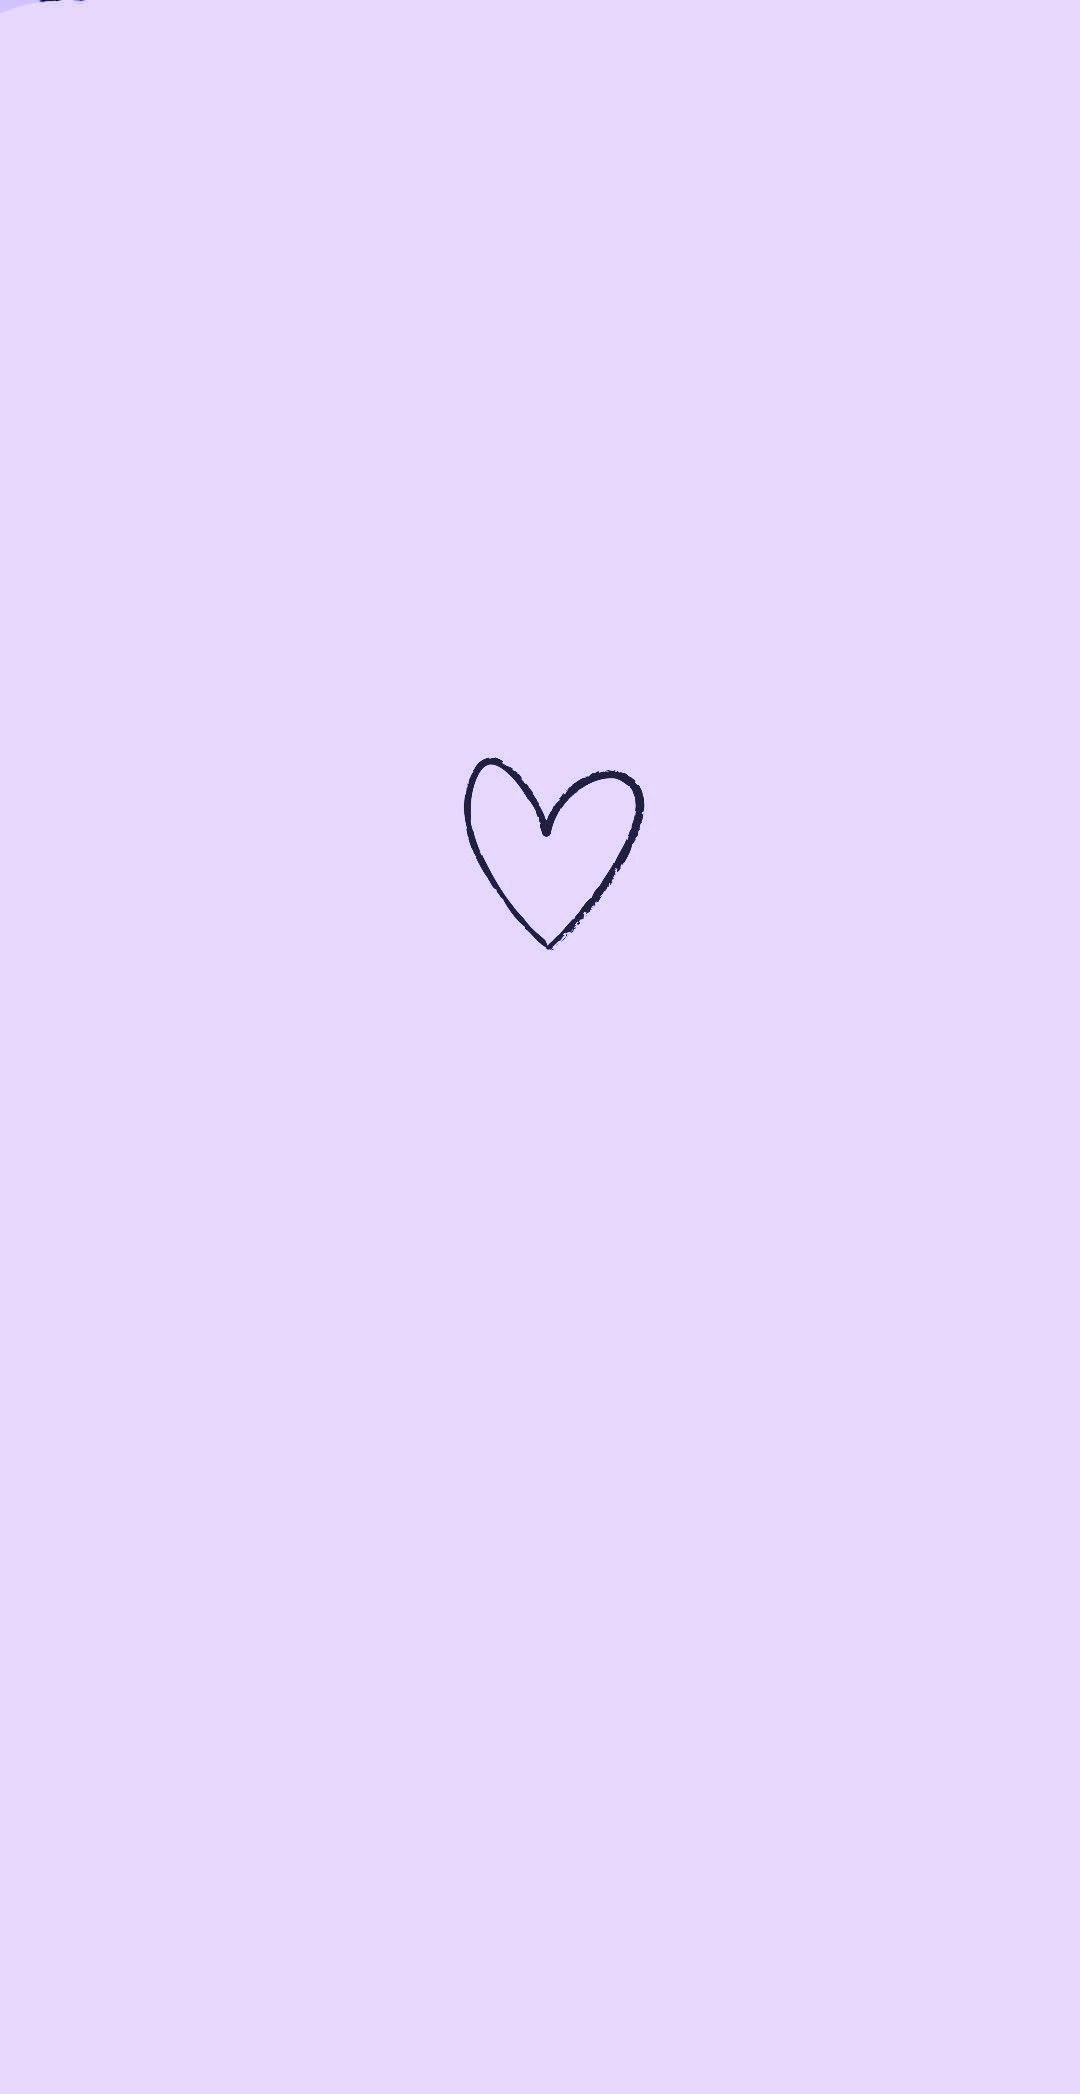 A heart drawn in black on purple background - Pastel purple, light purple